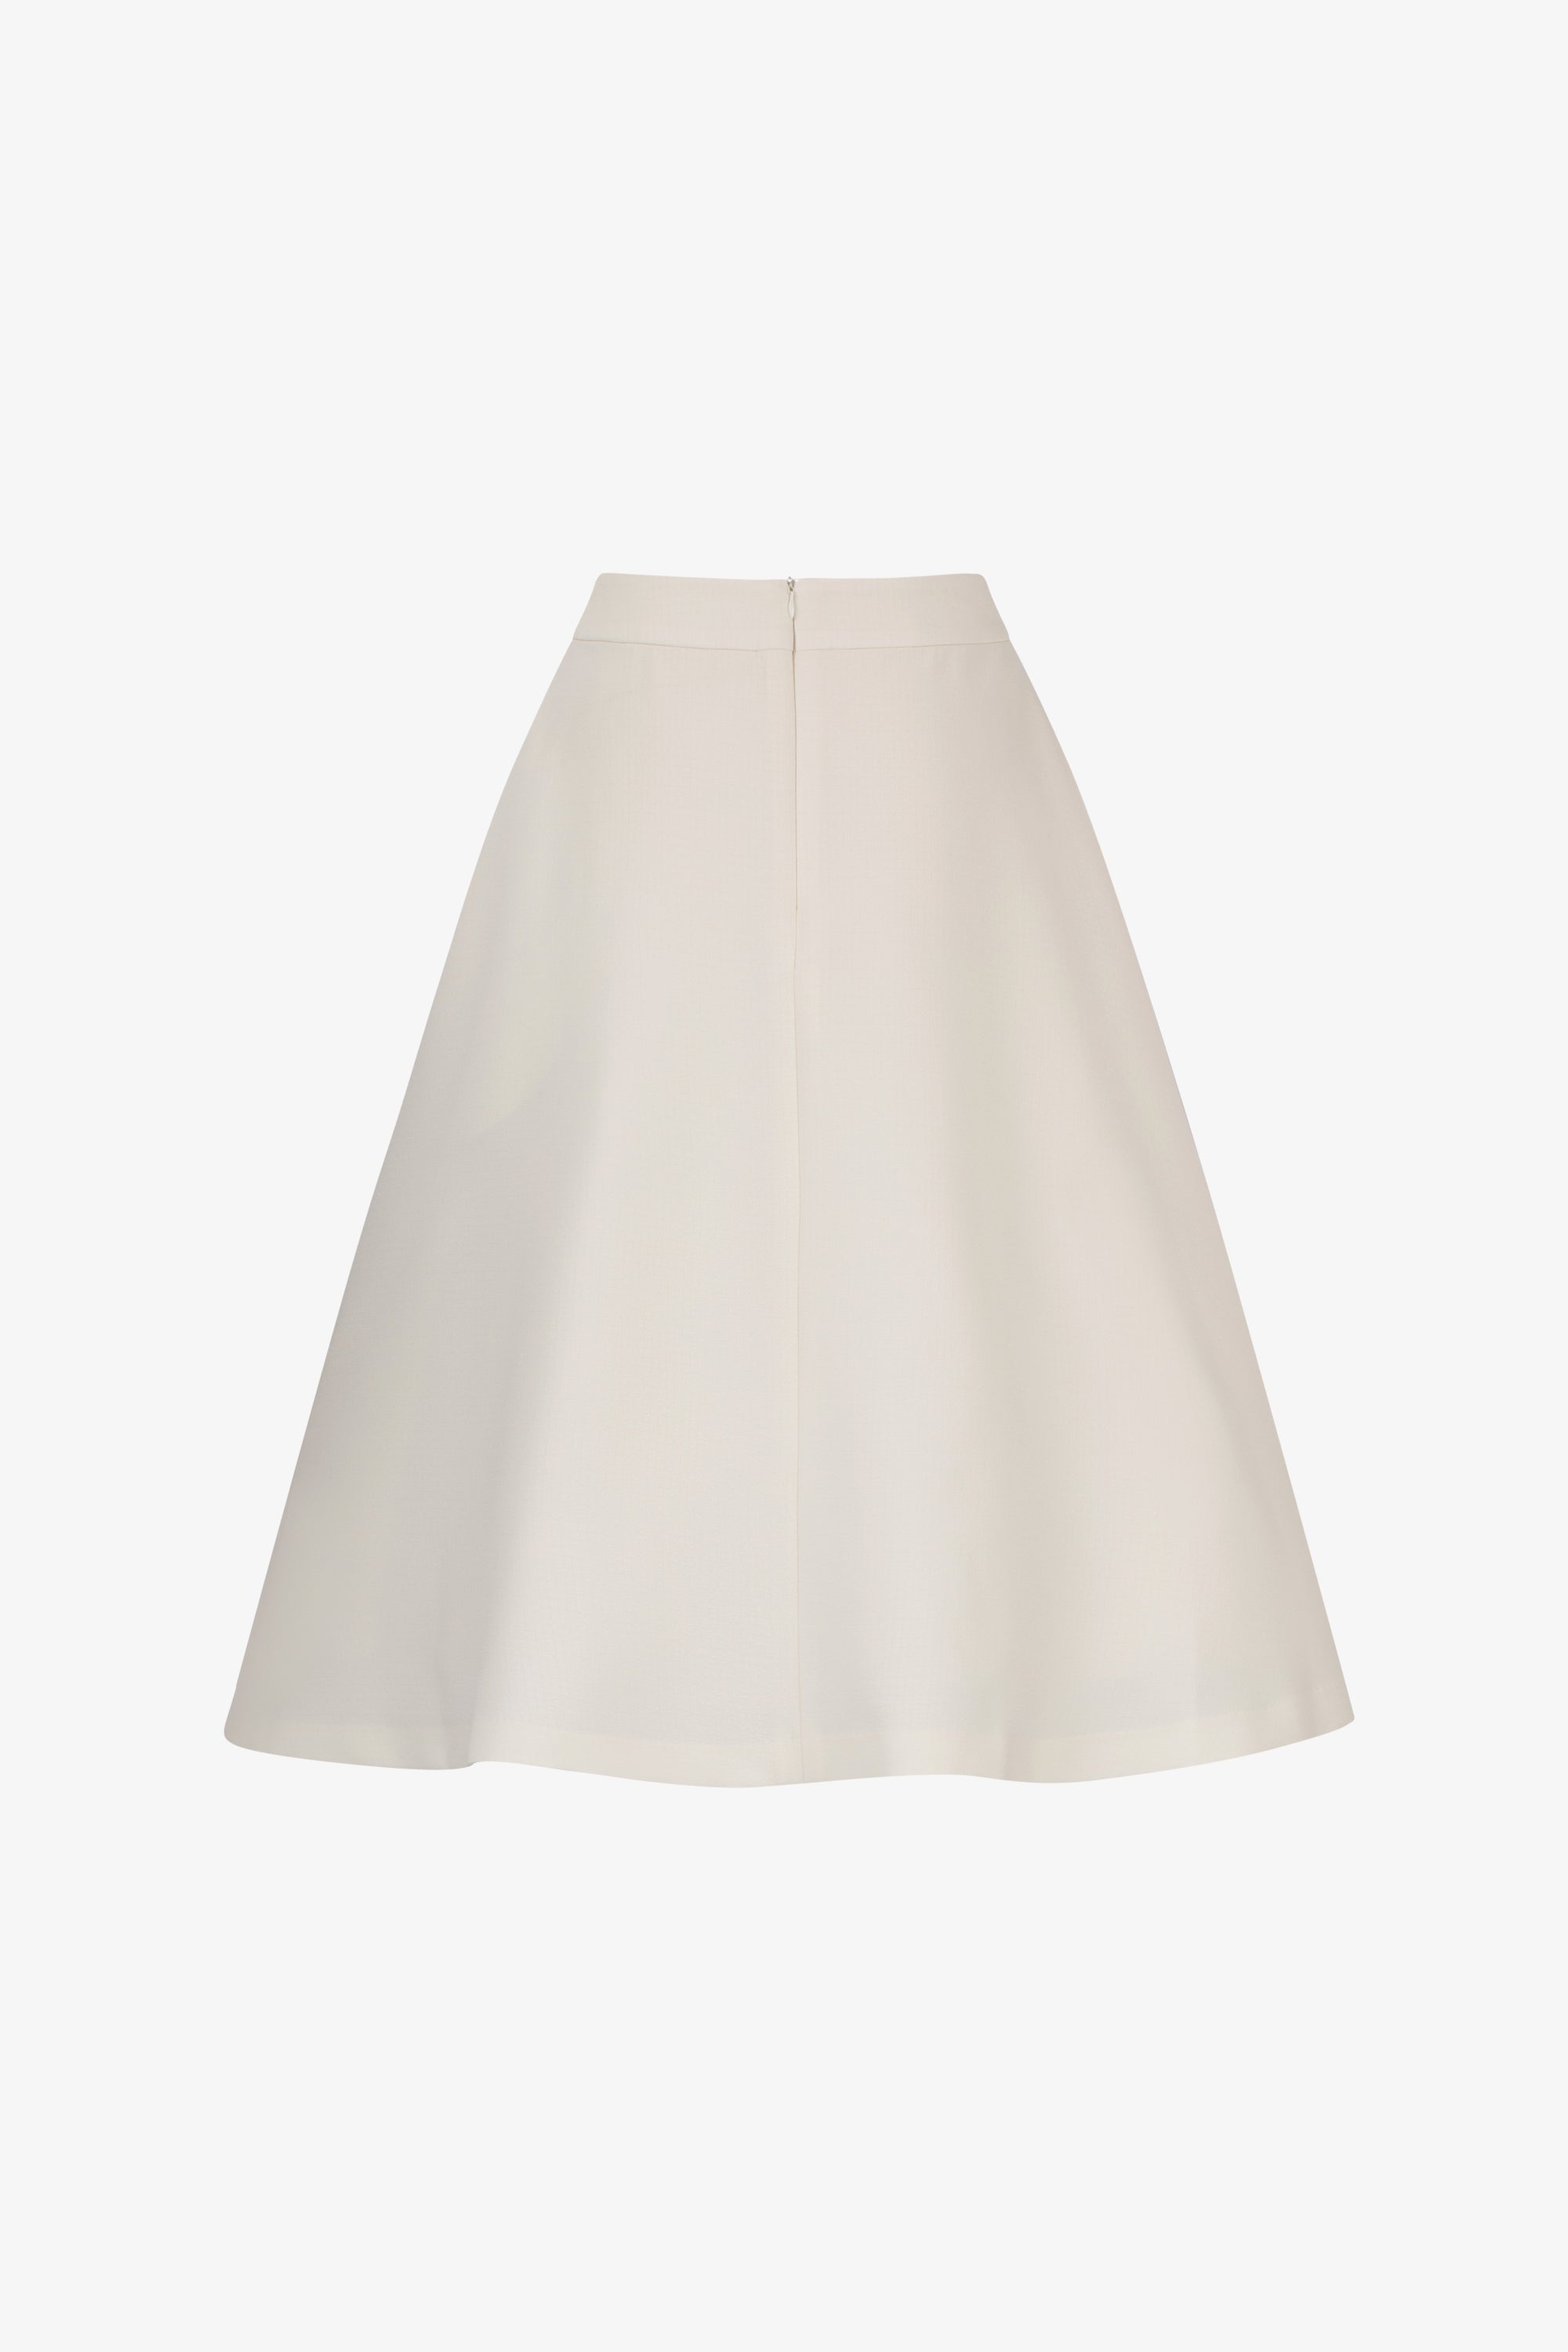 Selleck A-Line Skirt